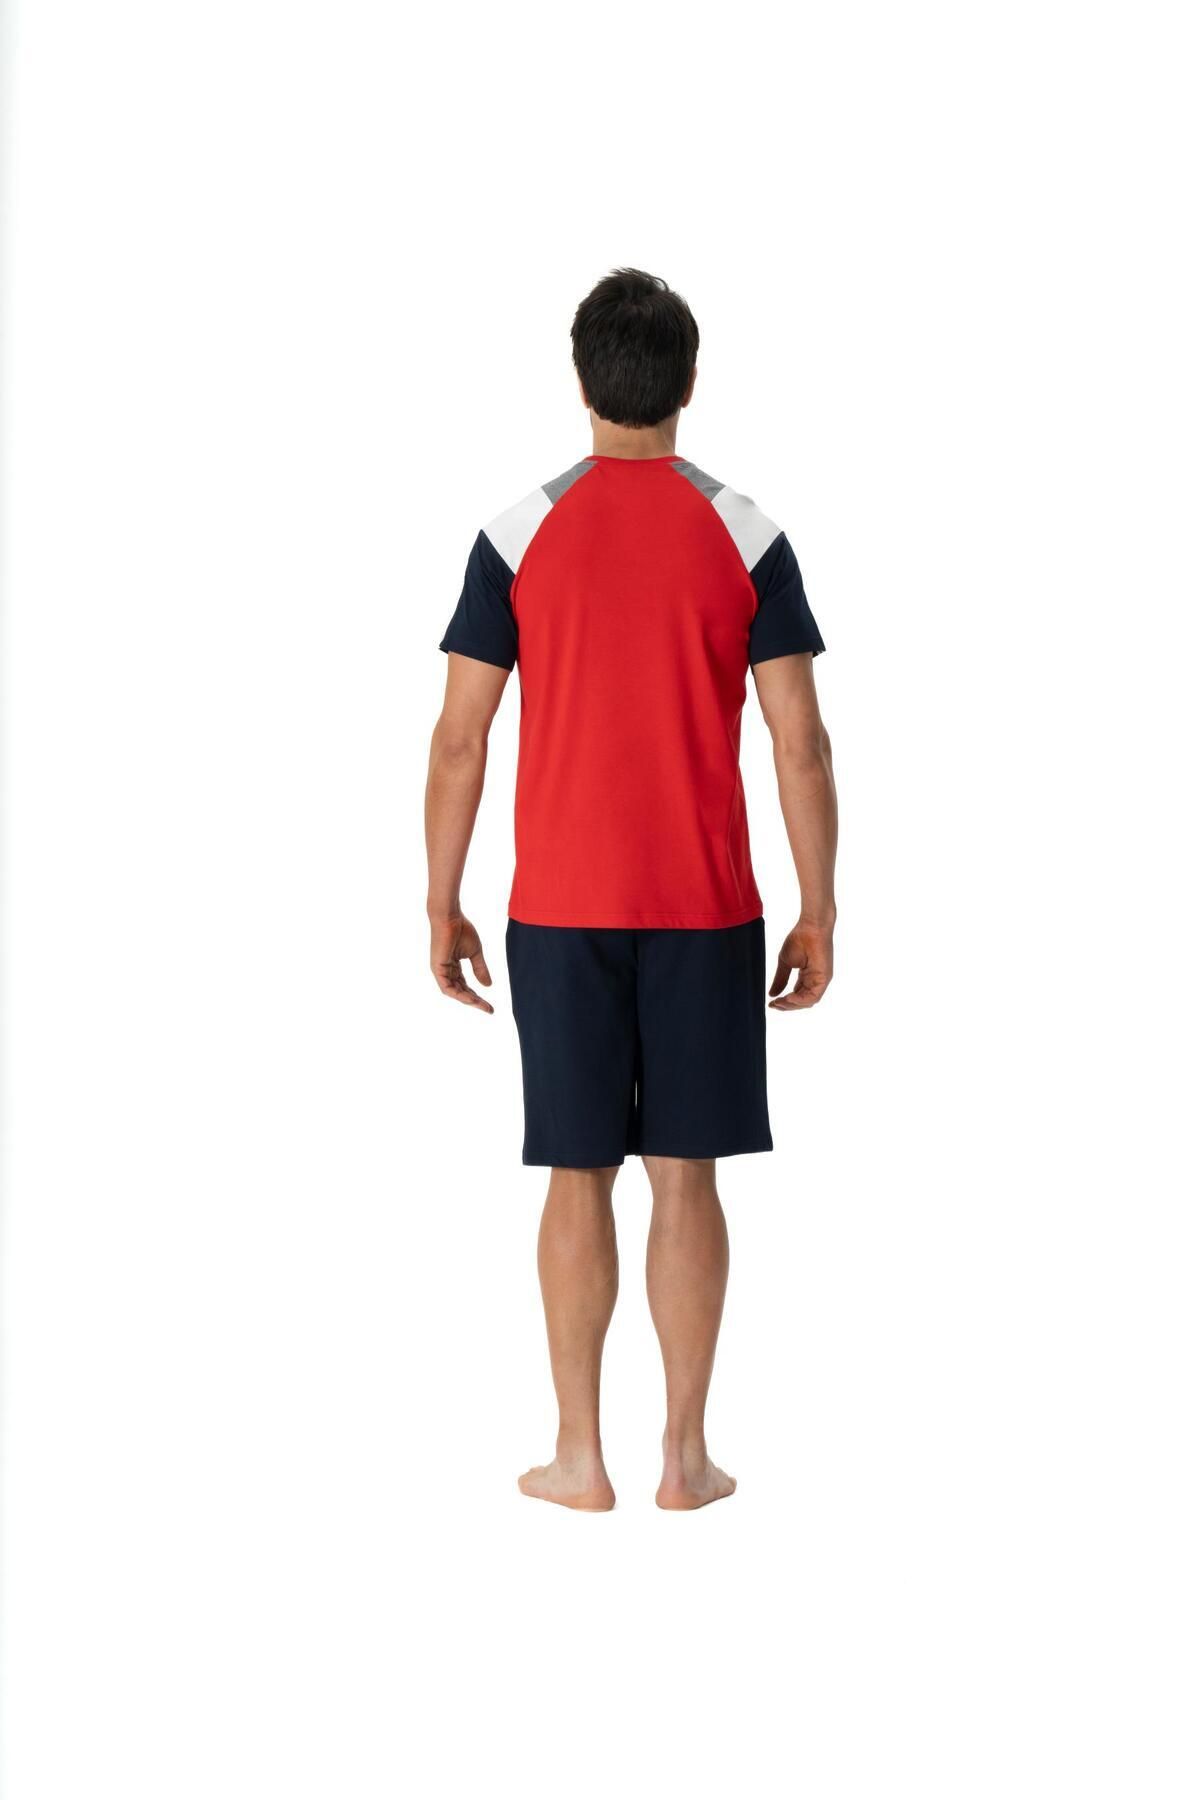 U.S. Polo Assn. U.S. Polo Assn. Erkek Kırmızı Yuvarlak Yaka Tişört Şort Regular 2'li Pijama Takımı